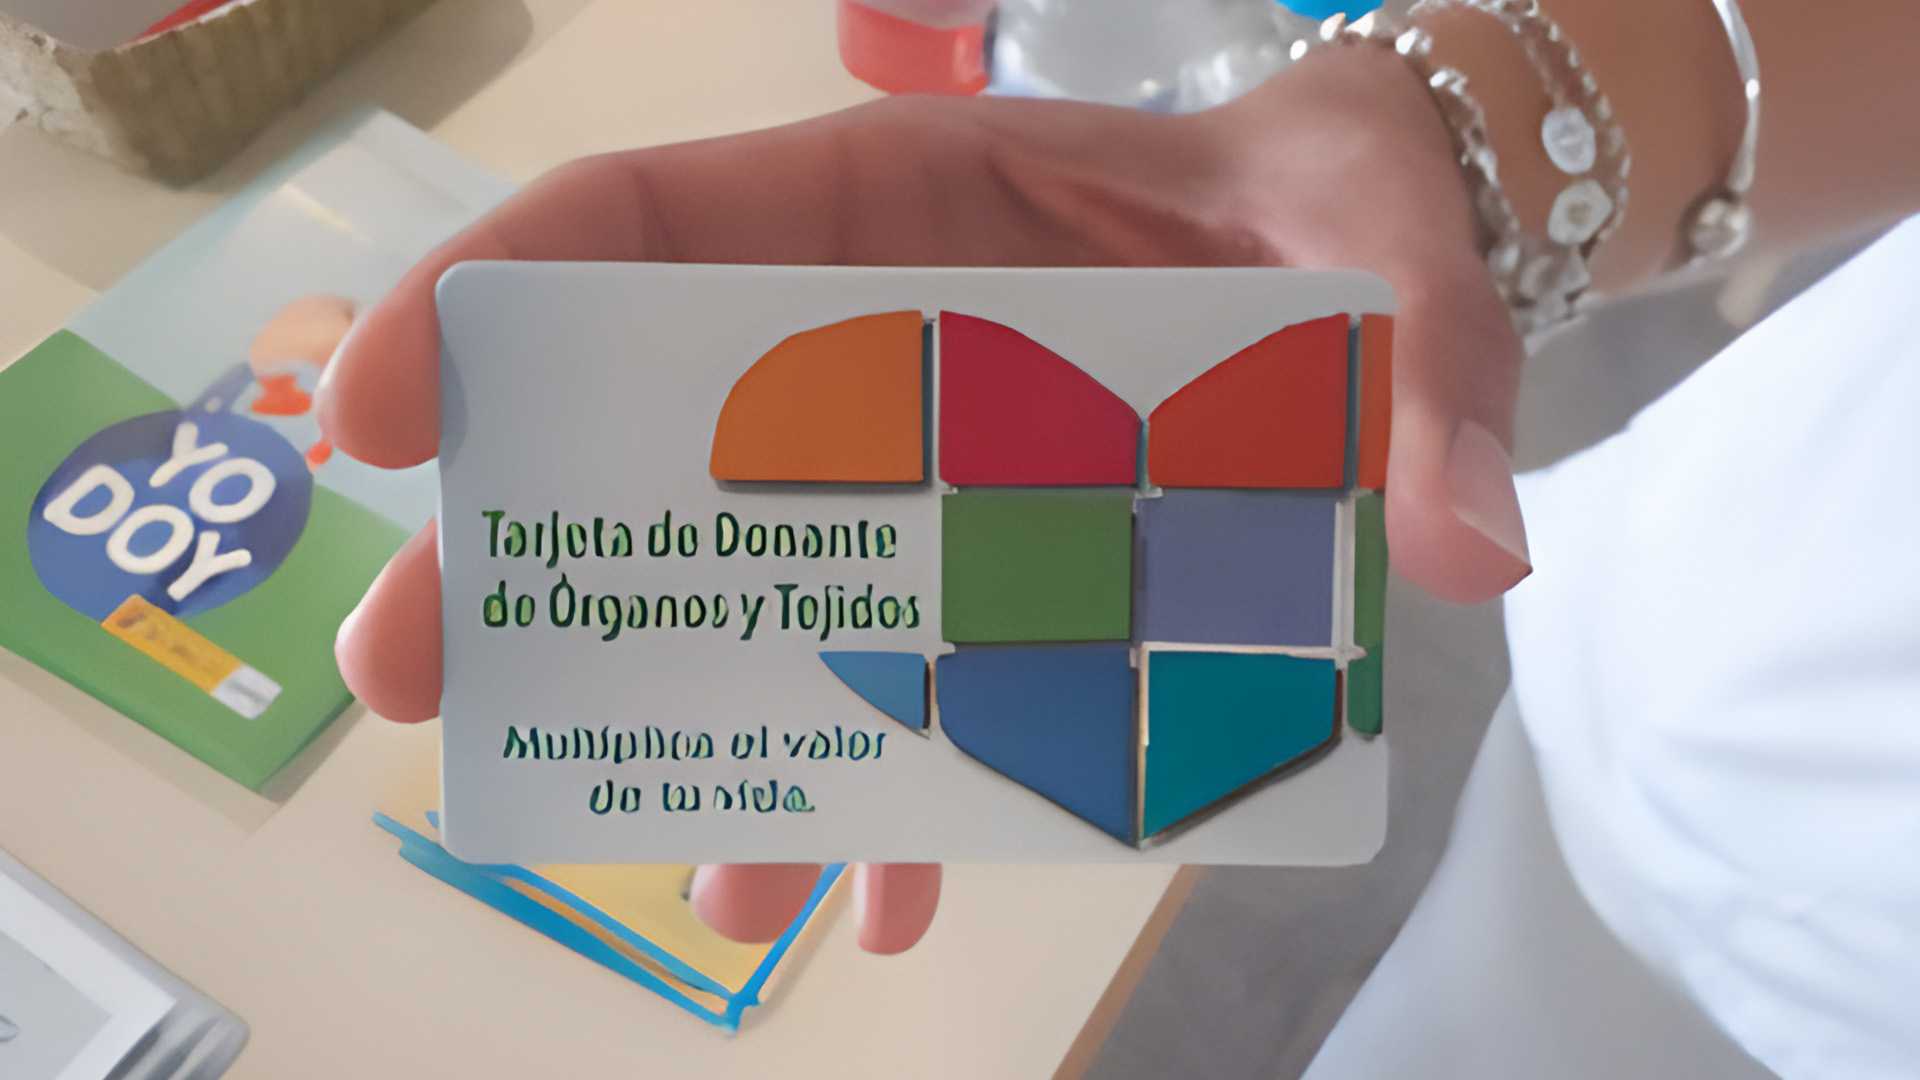 Nueva campaña de donación de sangre en San Pedro Alcántara